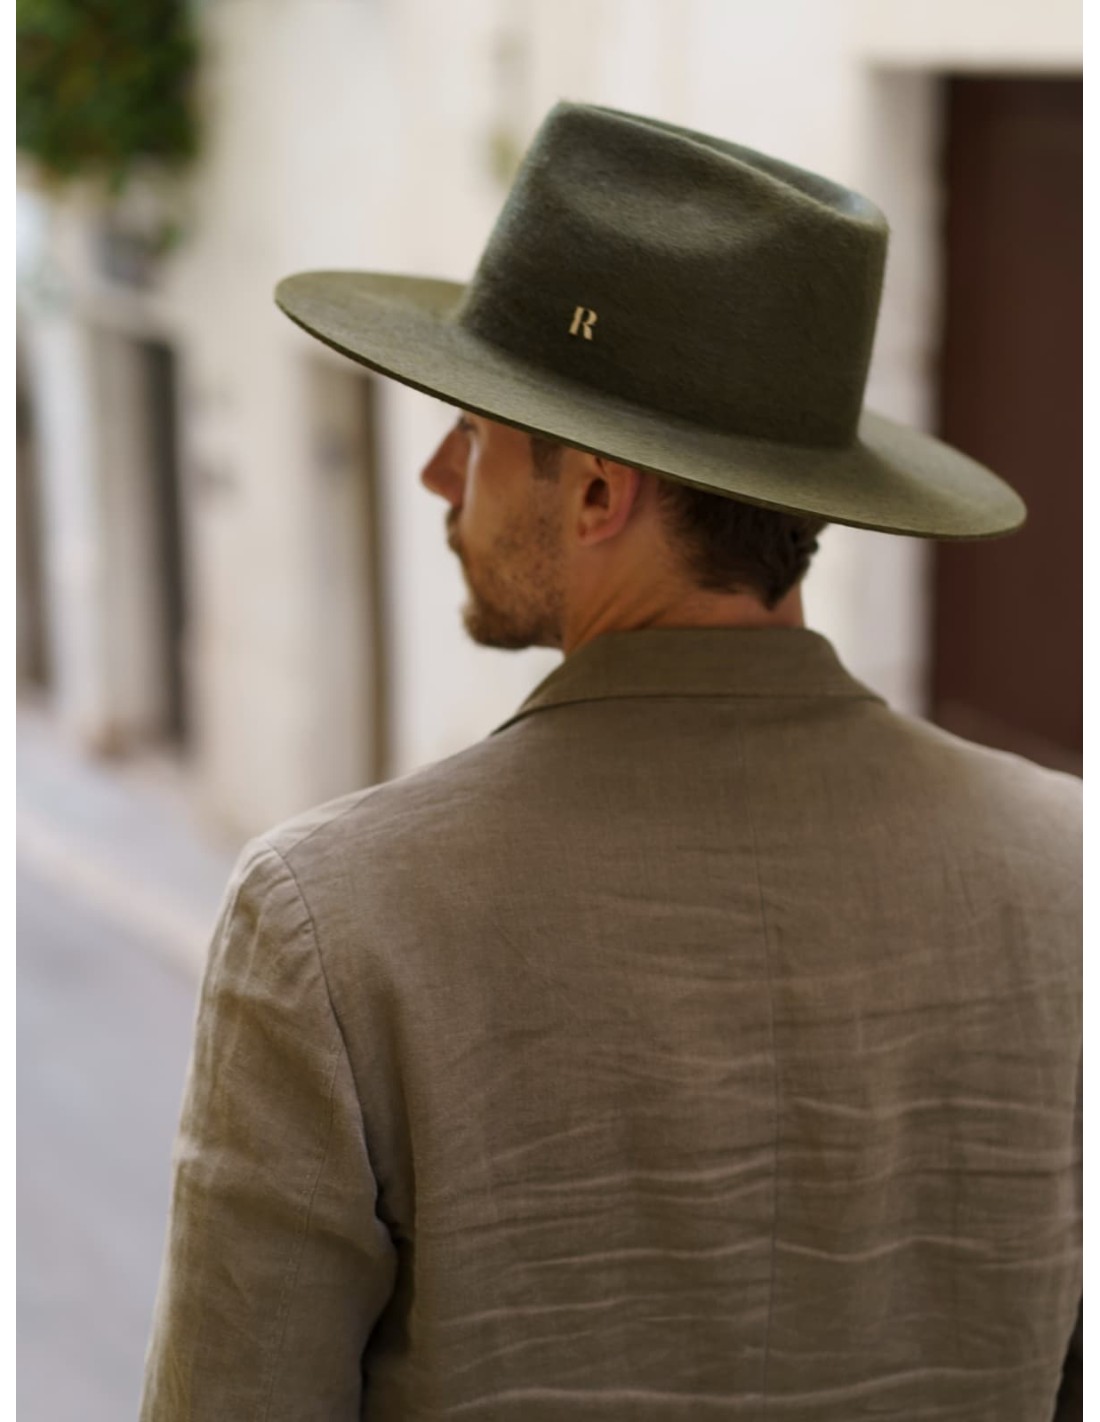 Chapeau Cowboy Men Offwhite - Chapeaux pour hommes - Raceu Hats Online